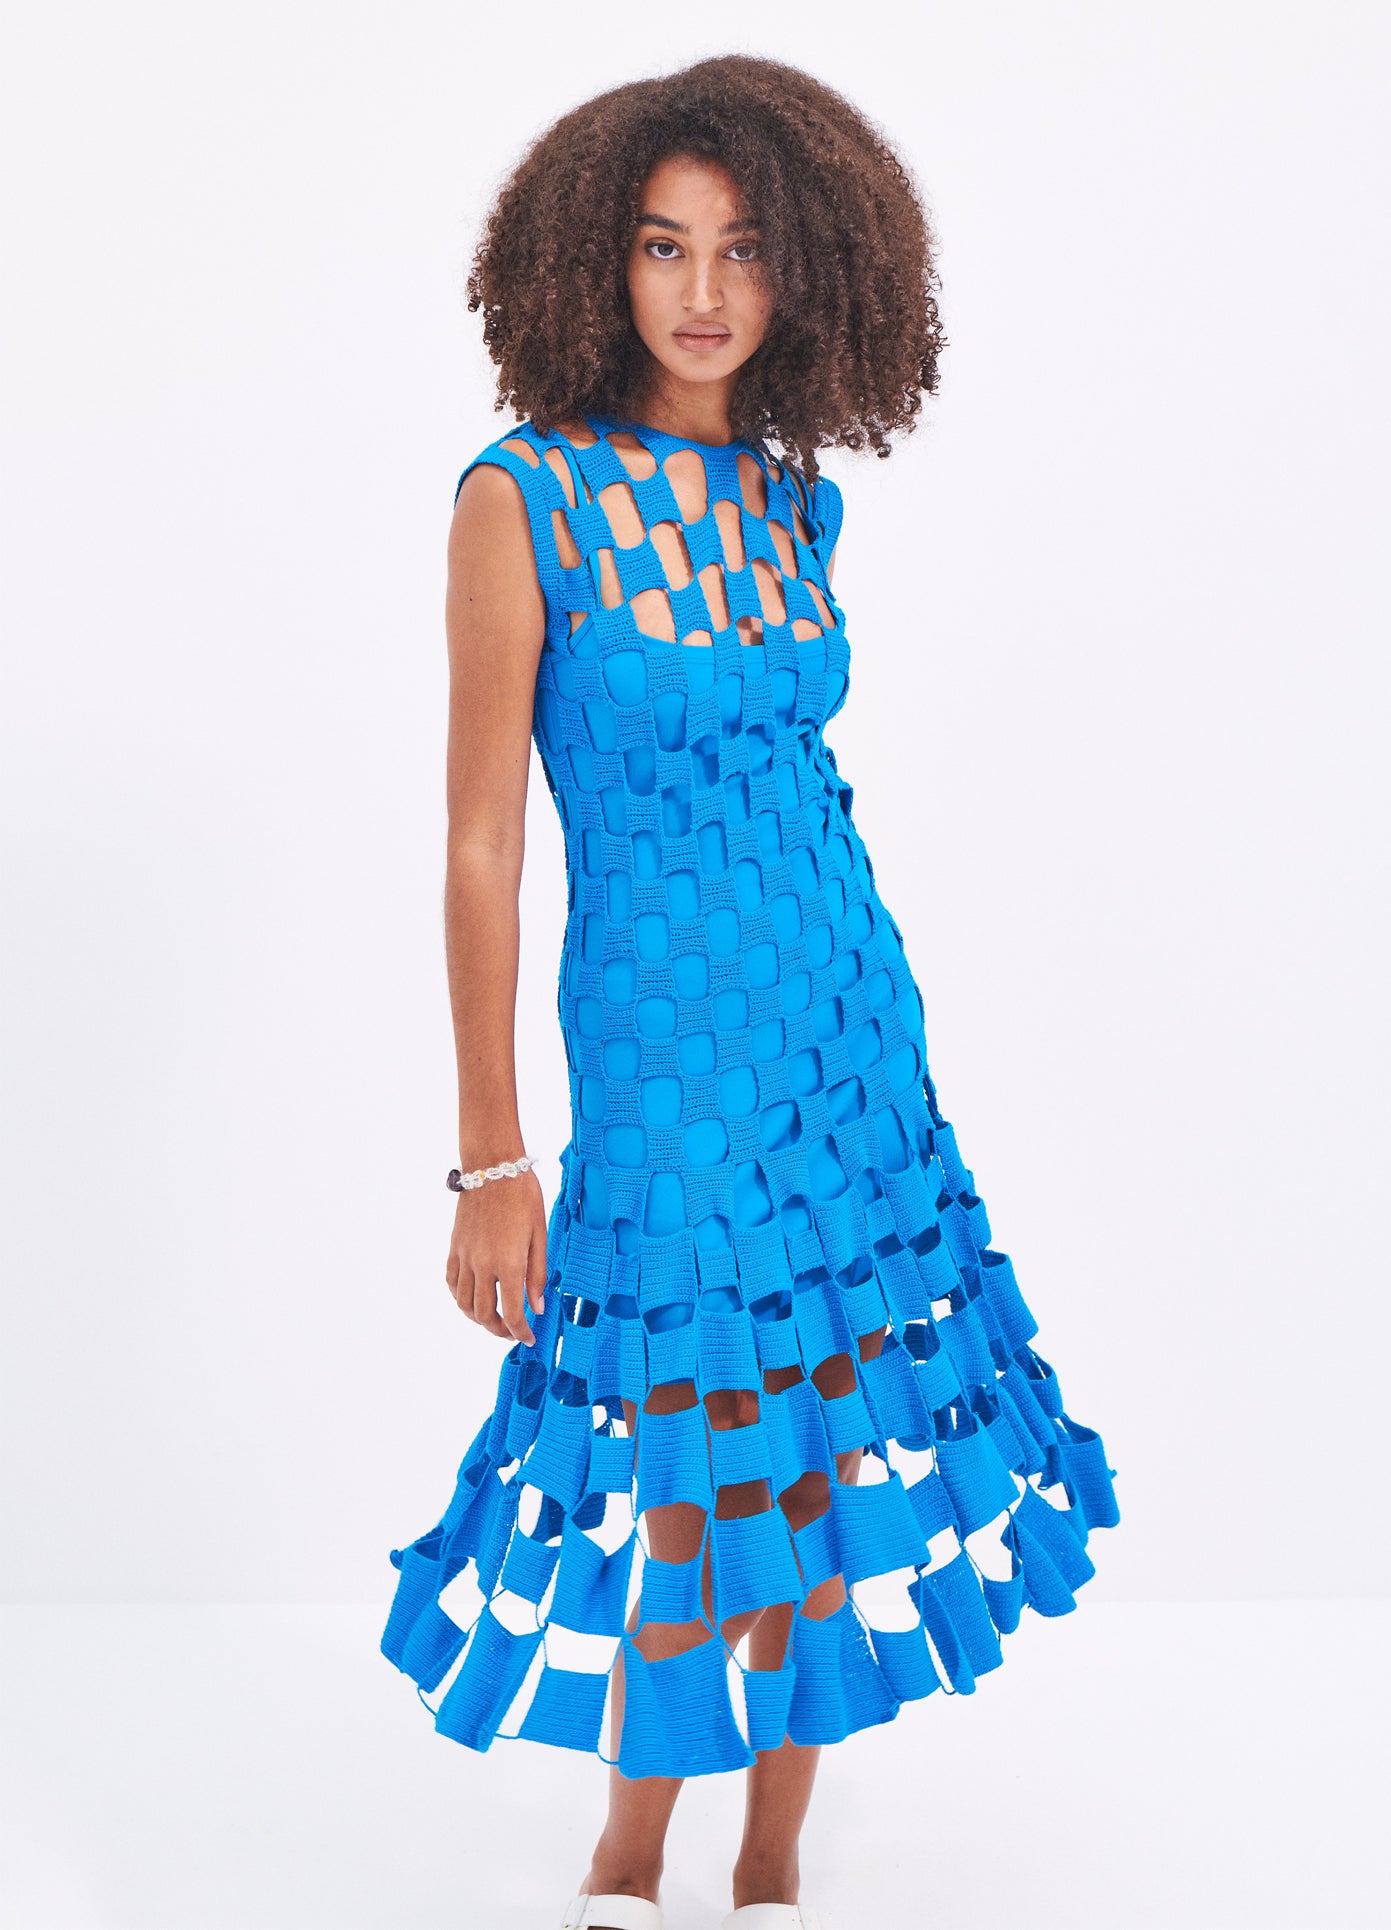 MONSE Square Crochet Dress in Blue on model full front view